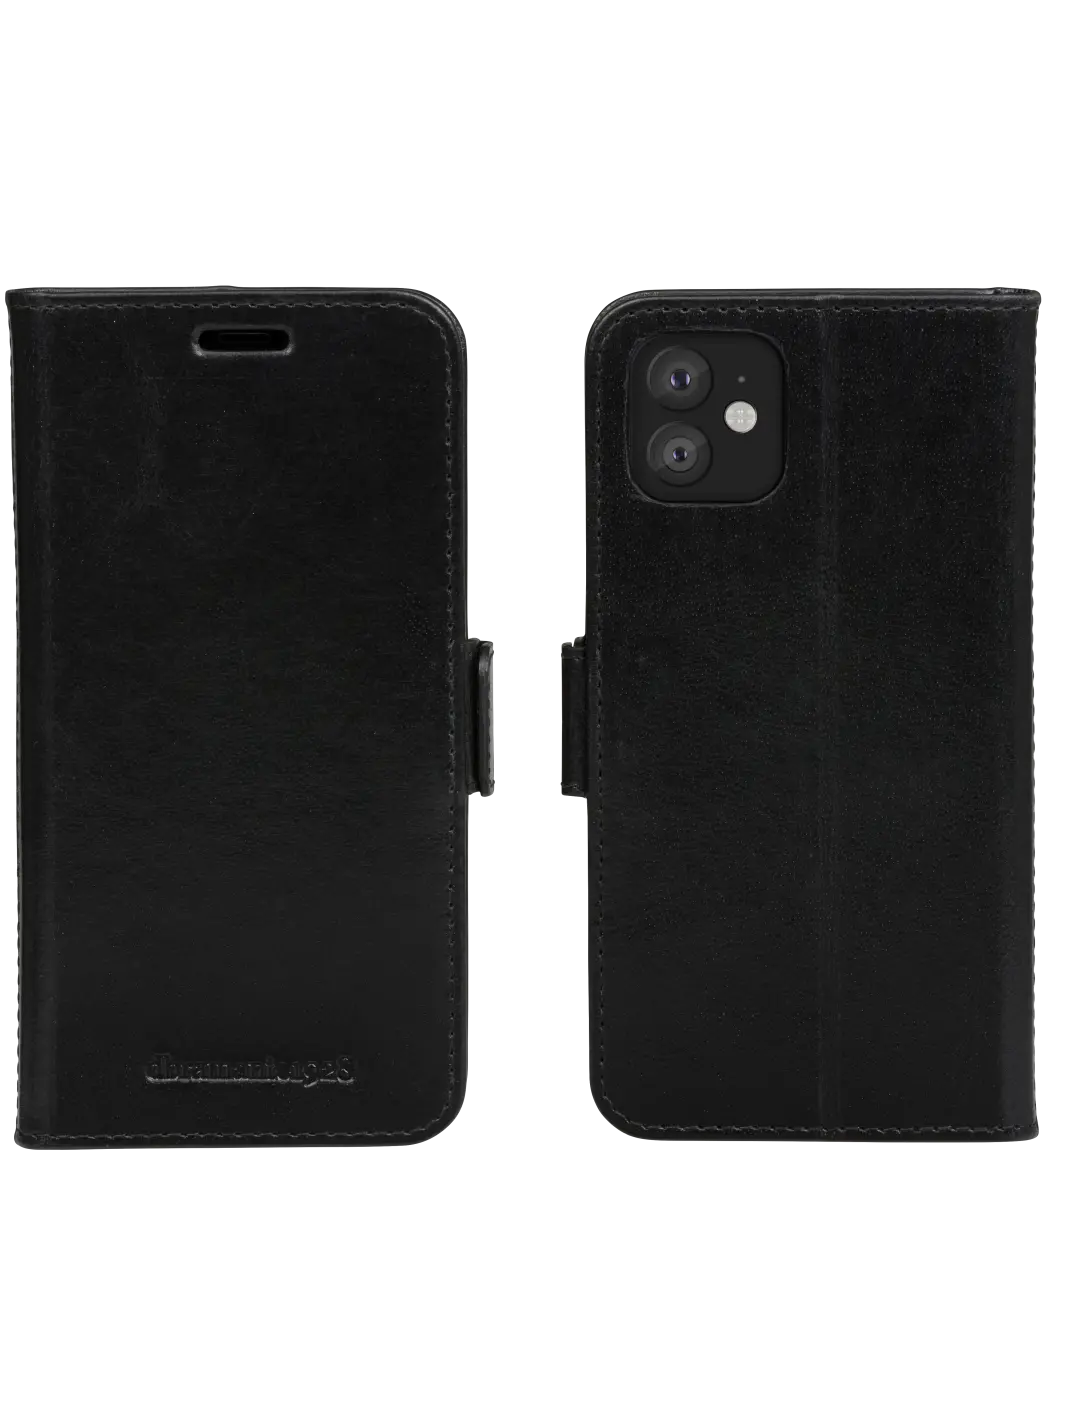 Copenhagen Slim Black iPhone 11/XR Phone Cases